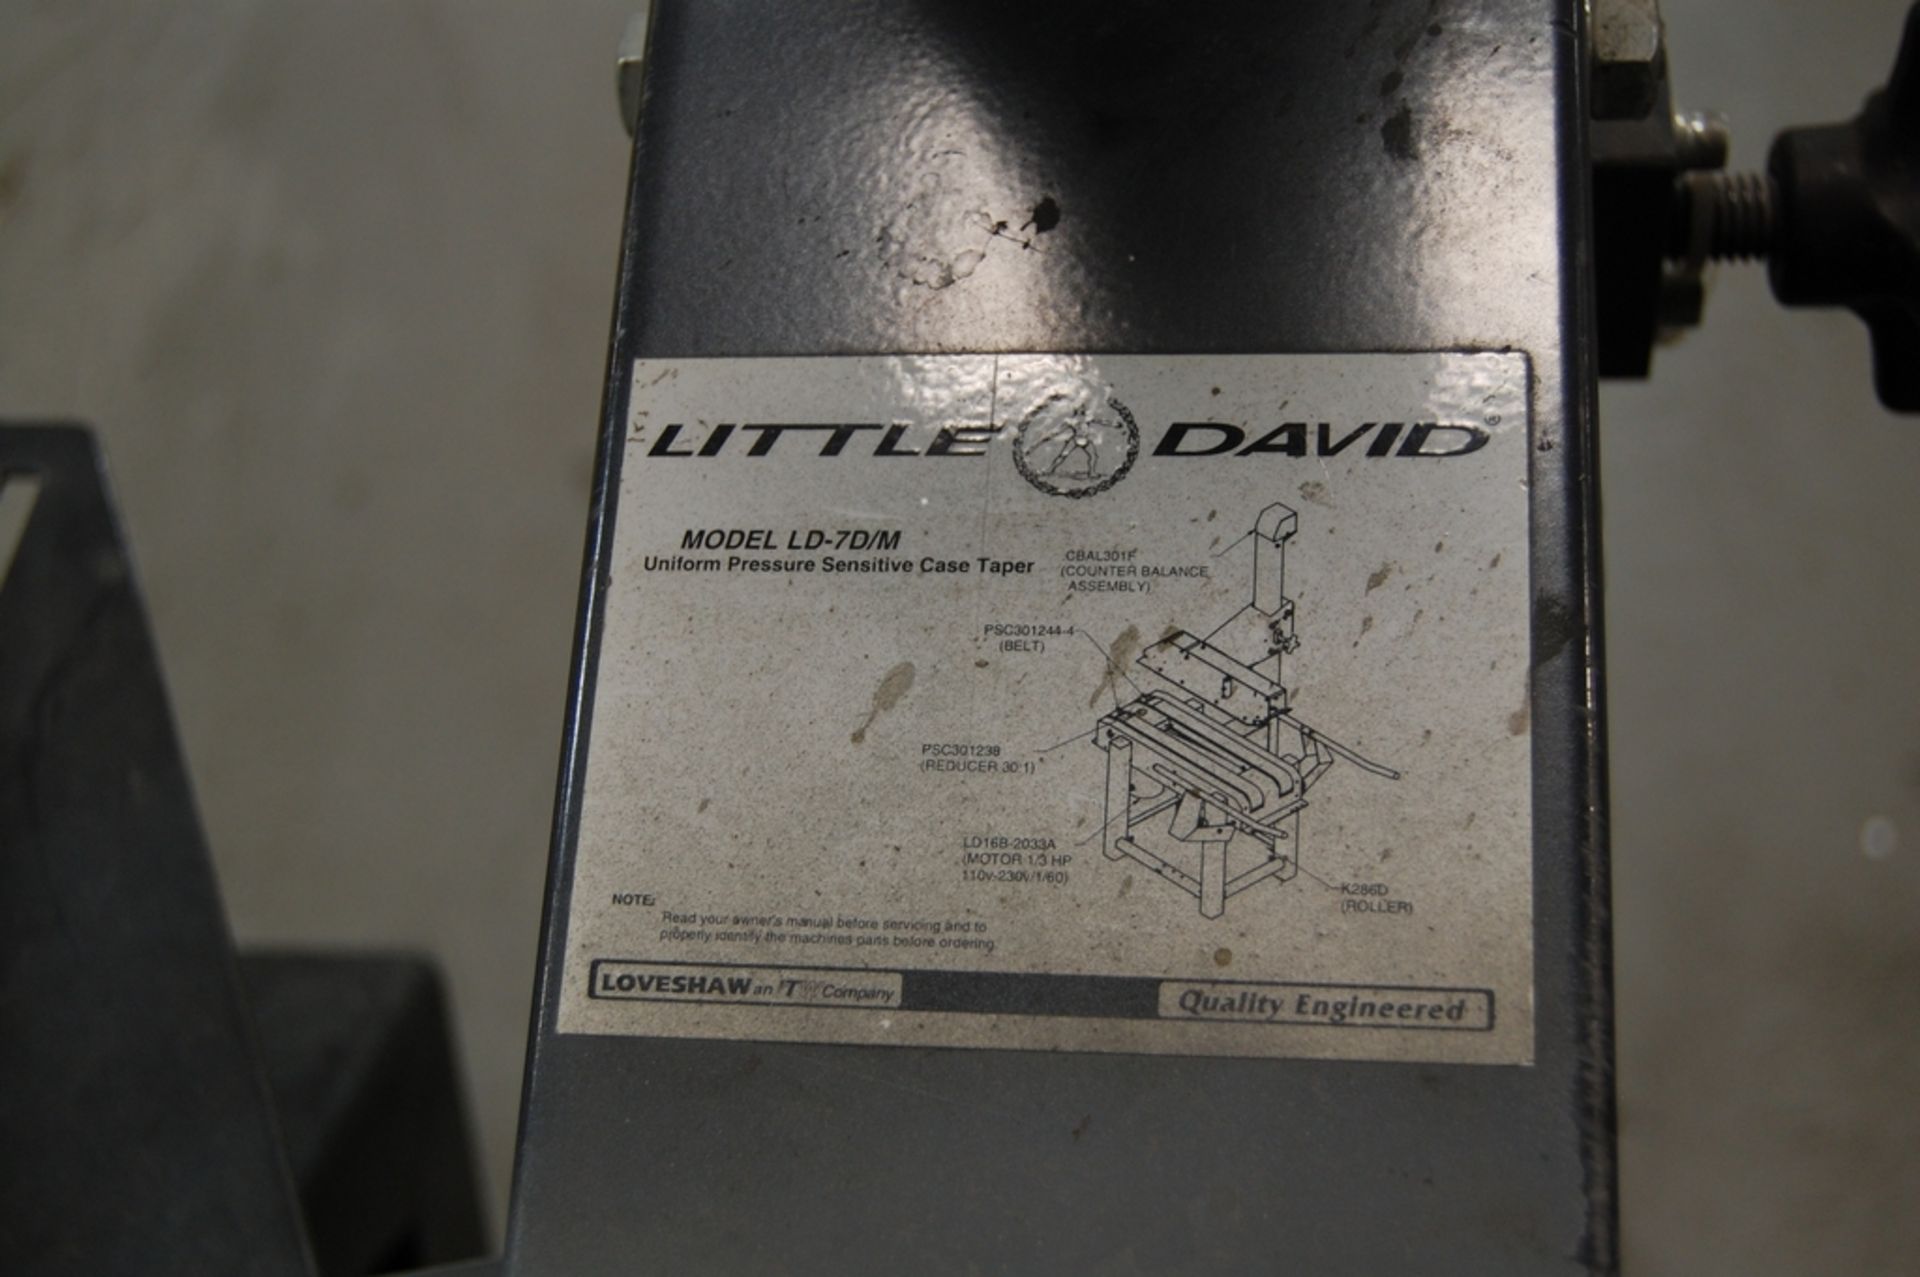 Loveshaw Model Little David LD-7D/M Uniform Pressure Sensitive Case Sealer - Image 3 of 4